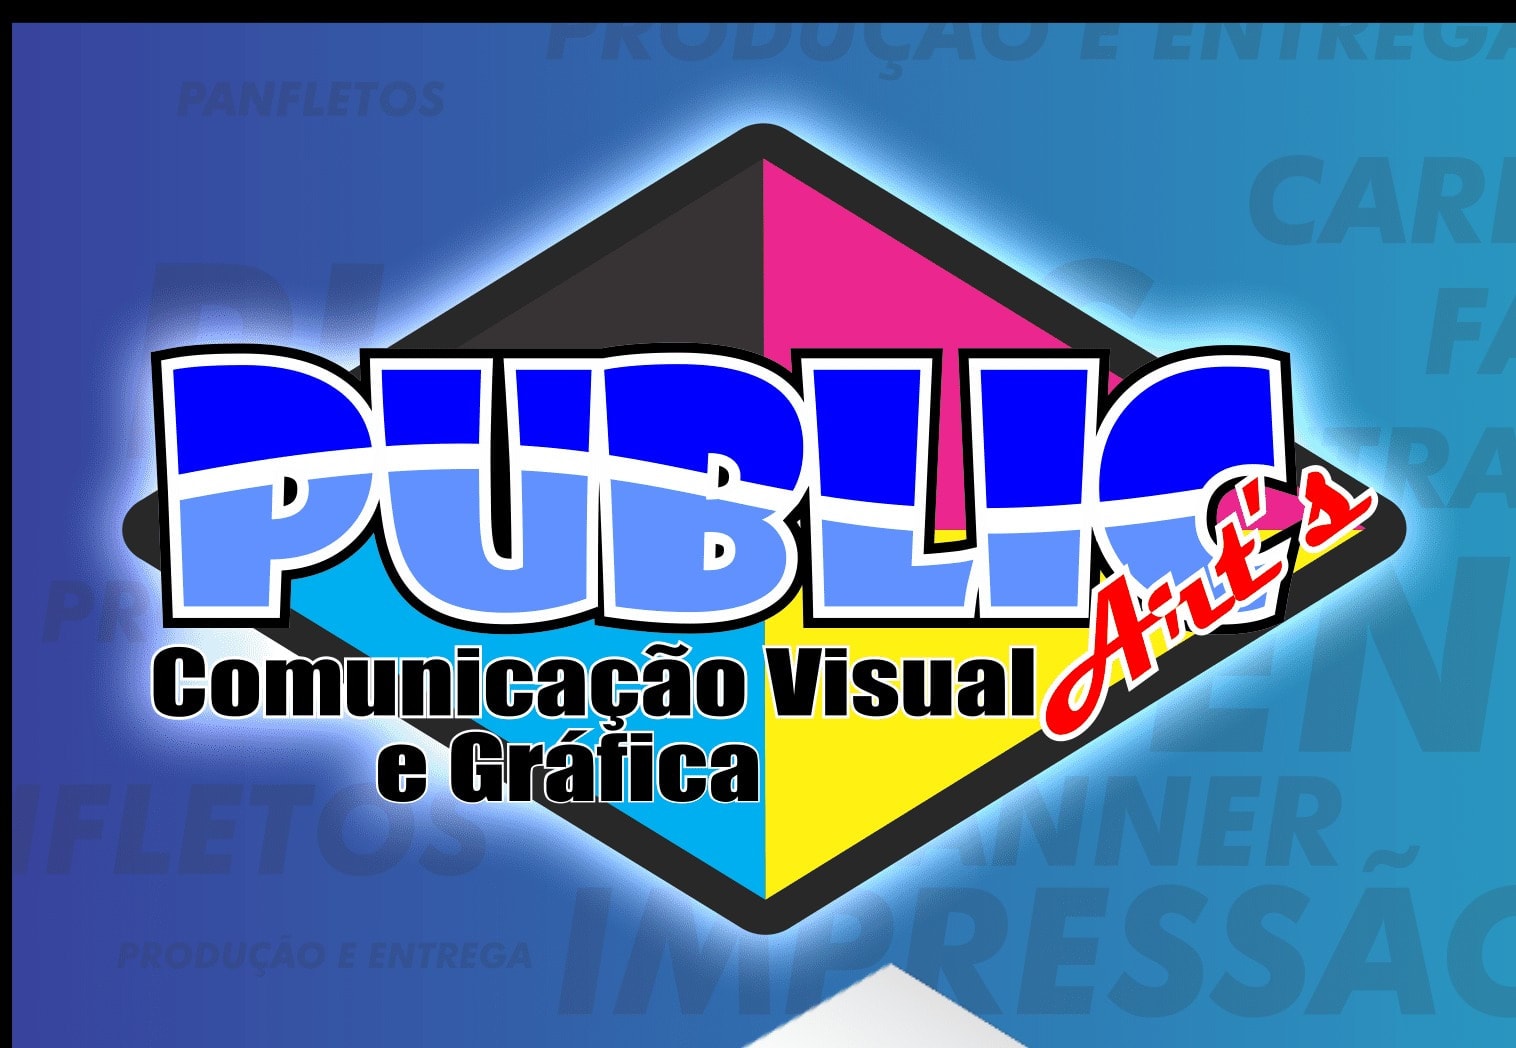 Publicart's Comunicação Visual e Gráfica